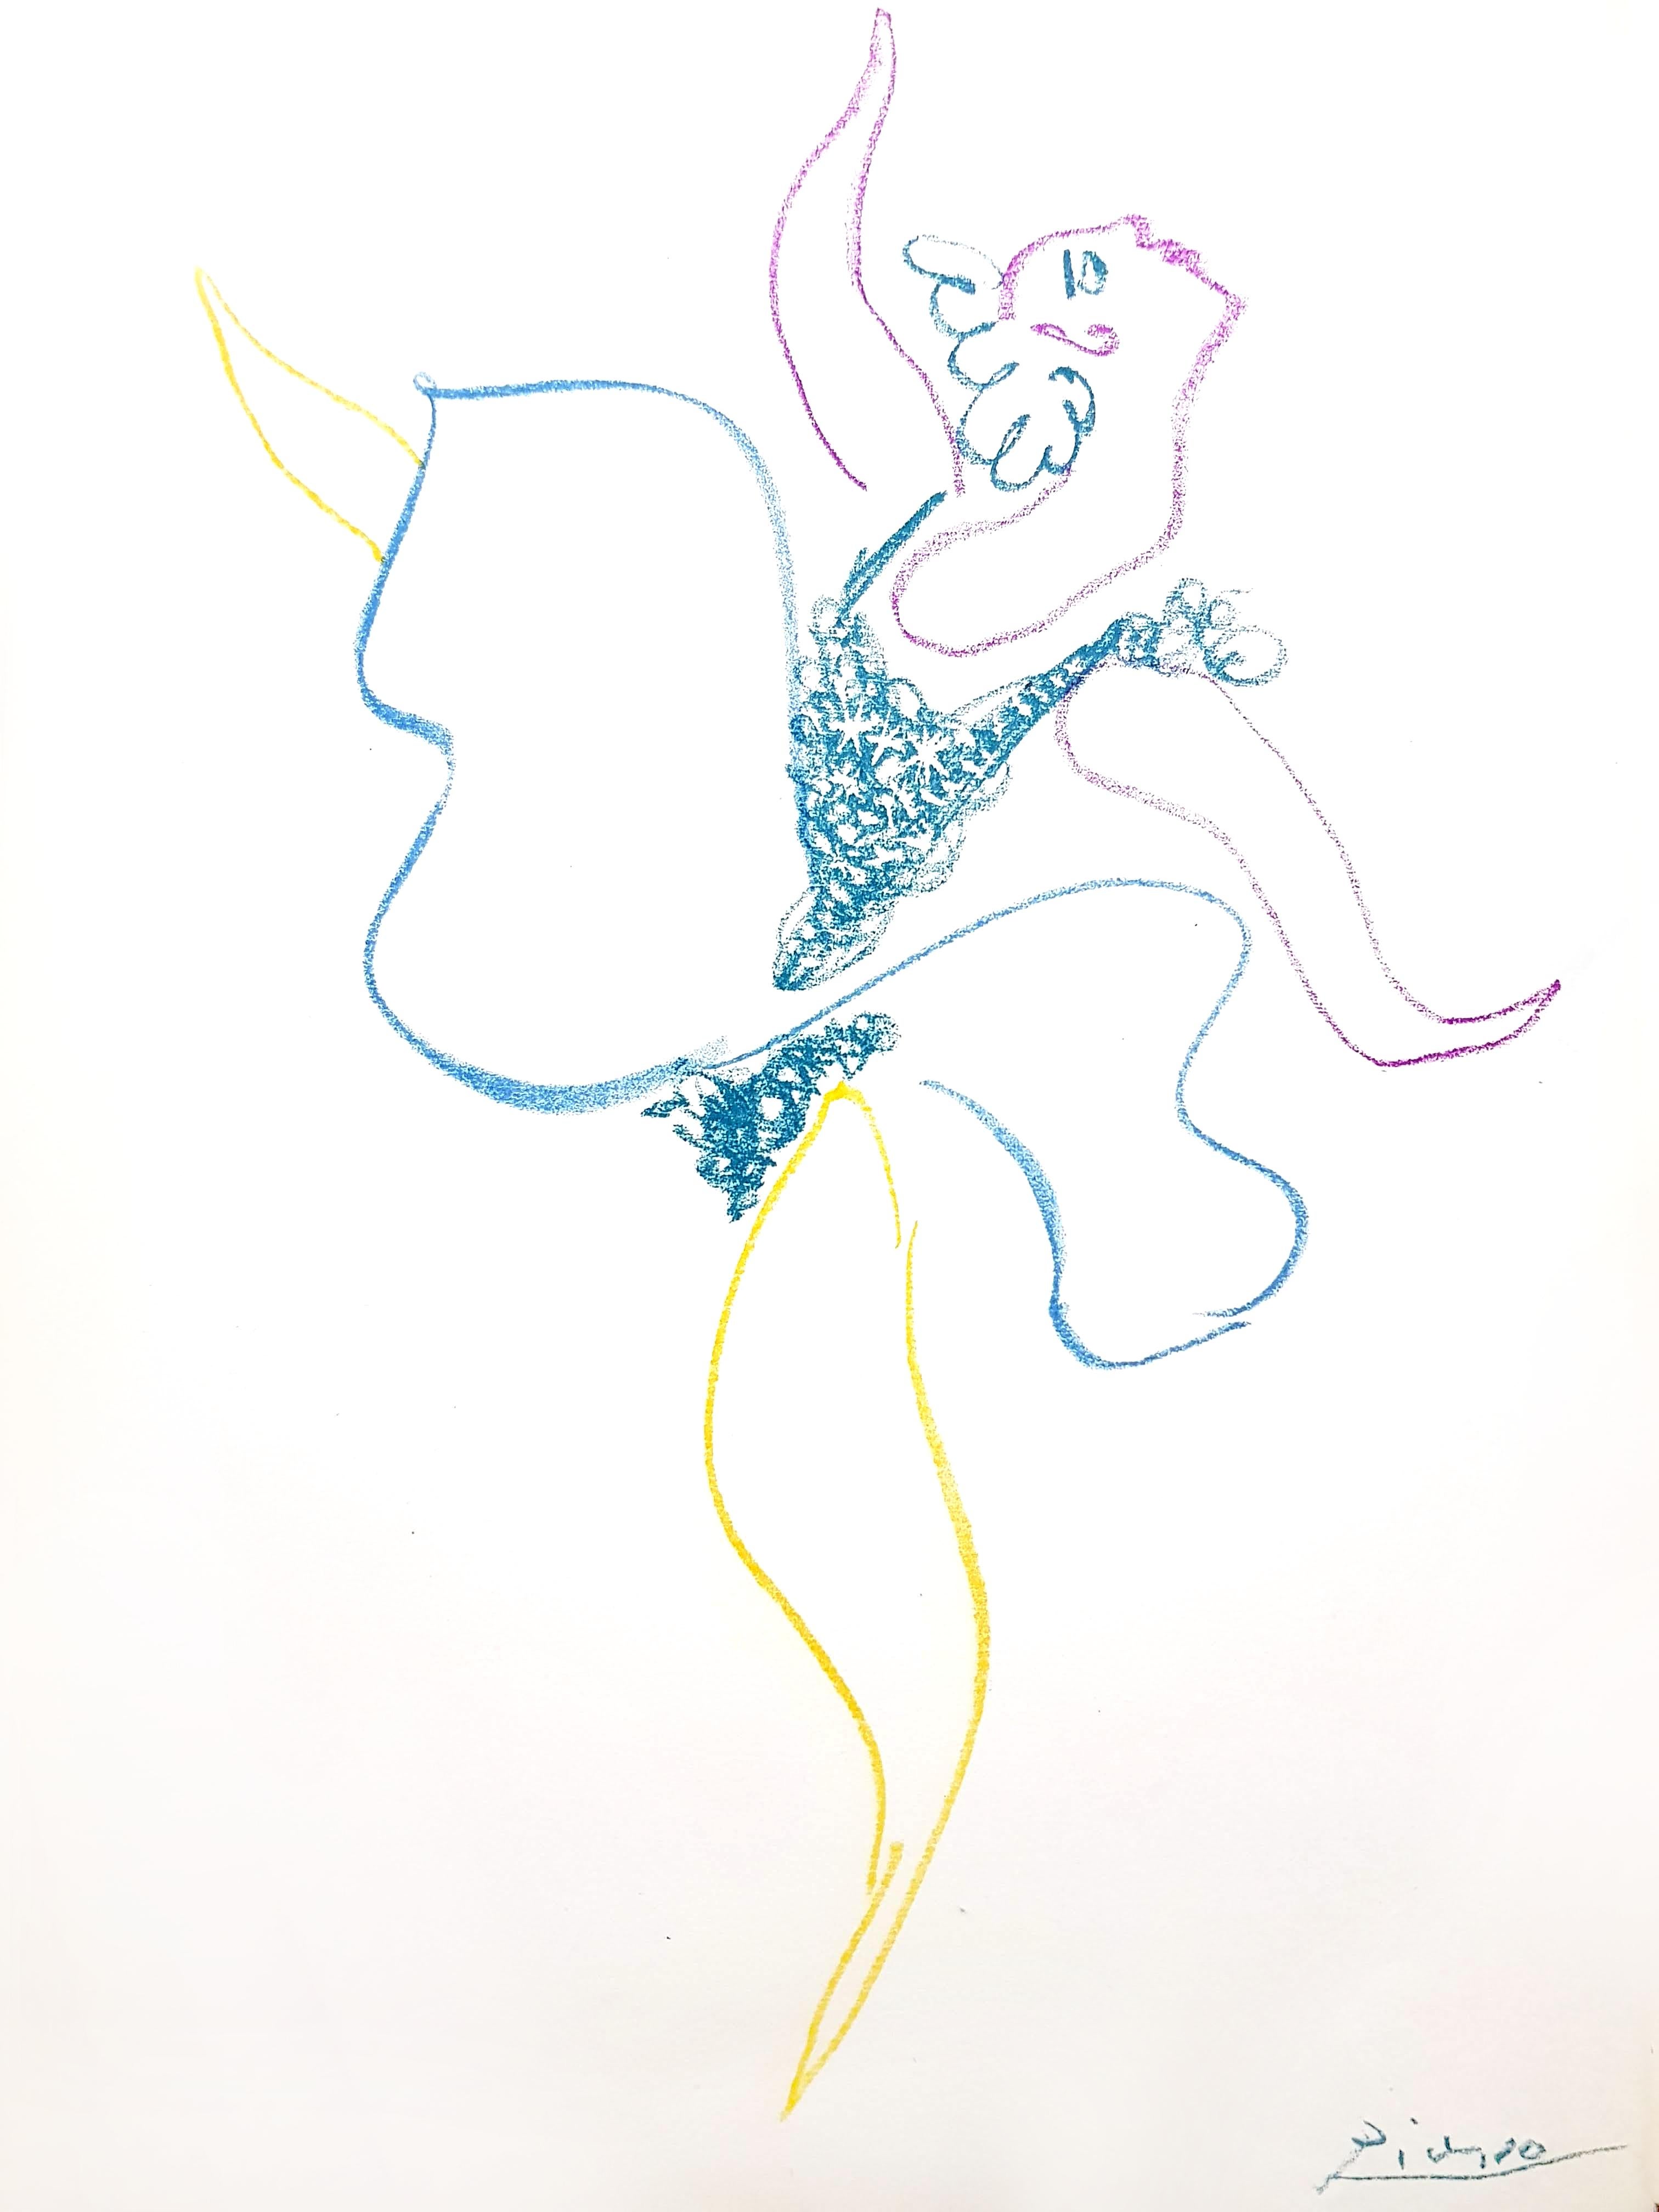 Pablo Picasso - Original-Lithographie
Titel: Die Balletttänzerin 
Abmessungen: 32 x 24 cm
1954
Referenz: Bloch 767
Frontispiz für das Buch "Le Ballet" (Paris: Editions Hachet, 1954) von Boris Kochno
Auflage von 1000 Stück
Gedruckte Unterschrift